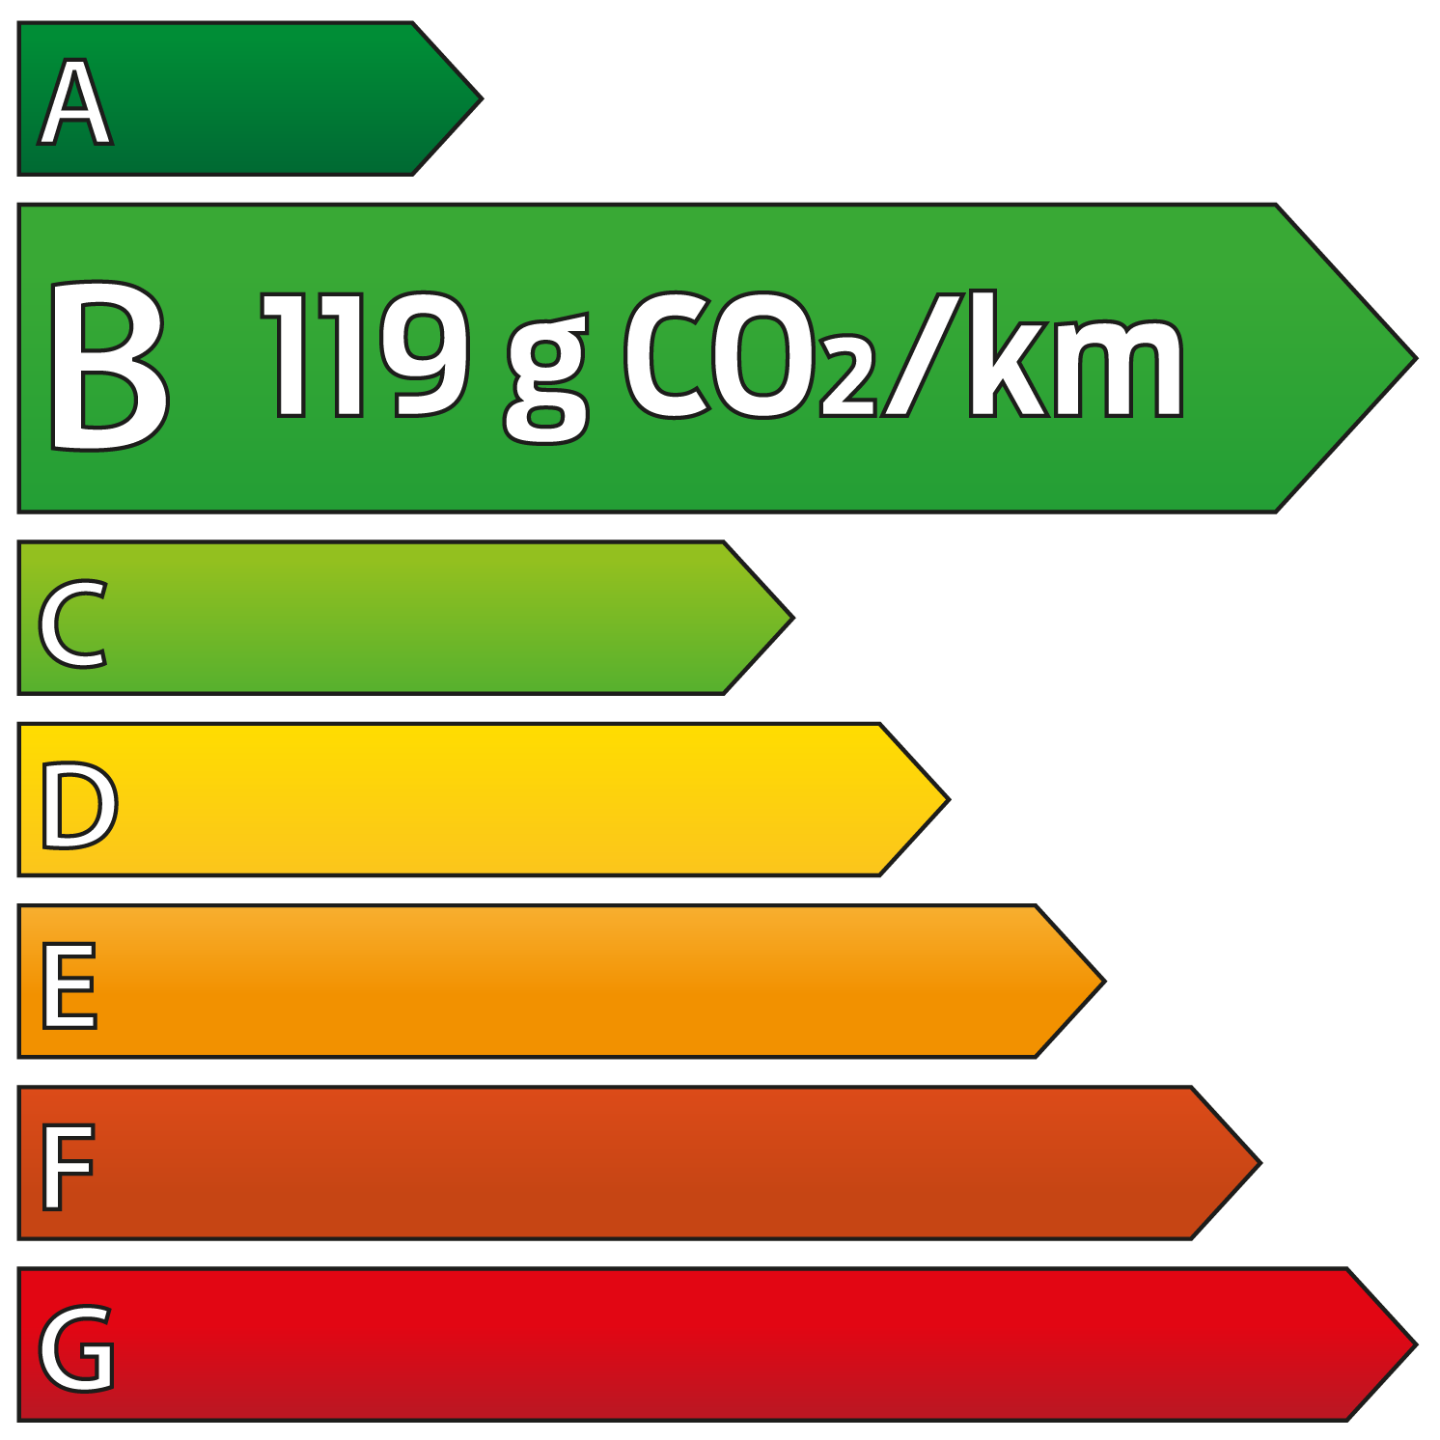 CO2 etiquette